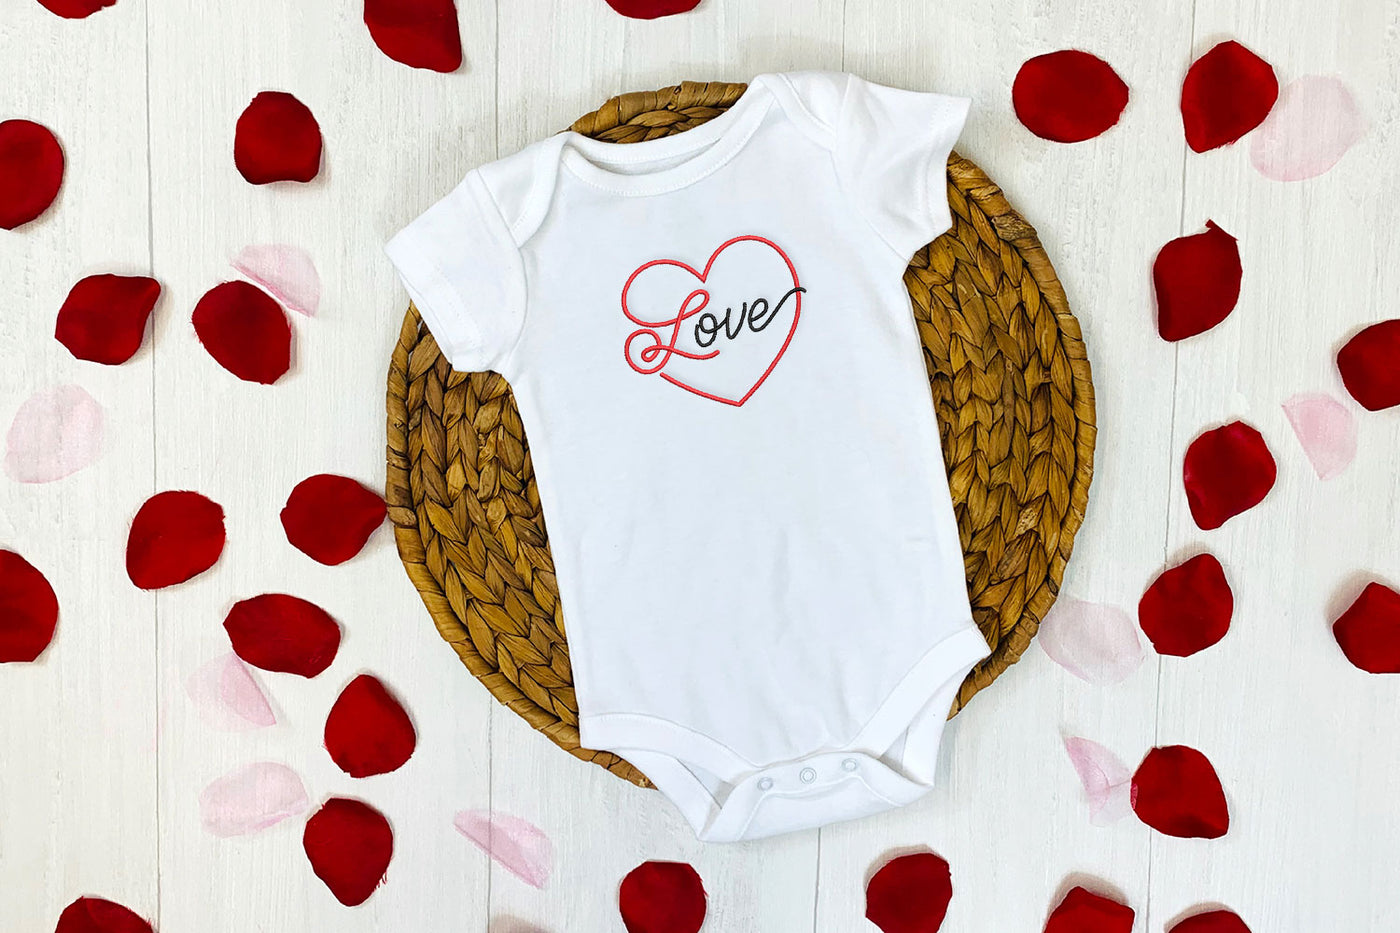 love script heart mini embroidery design file